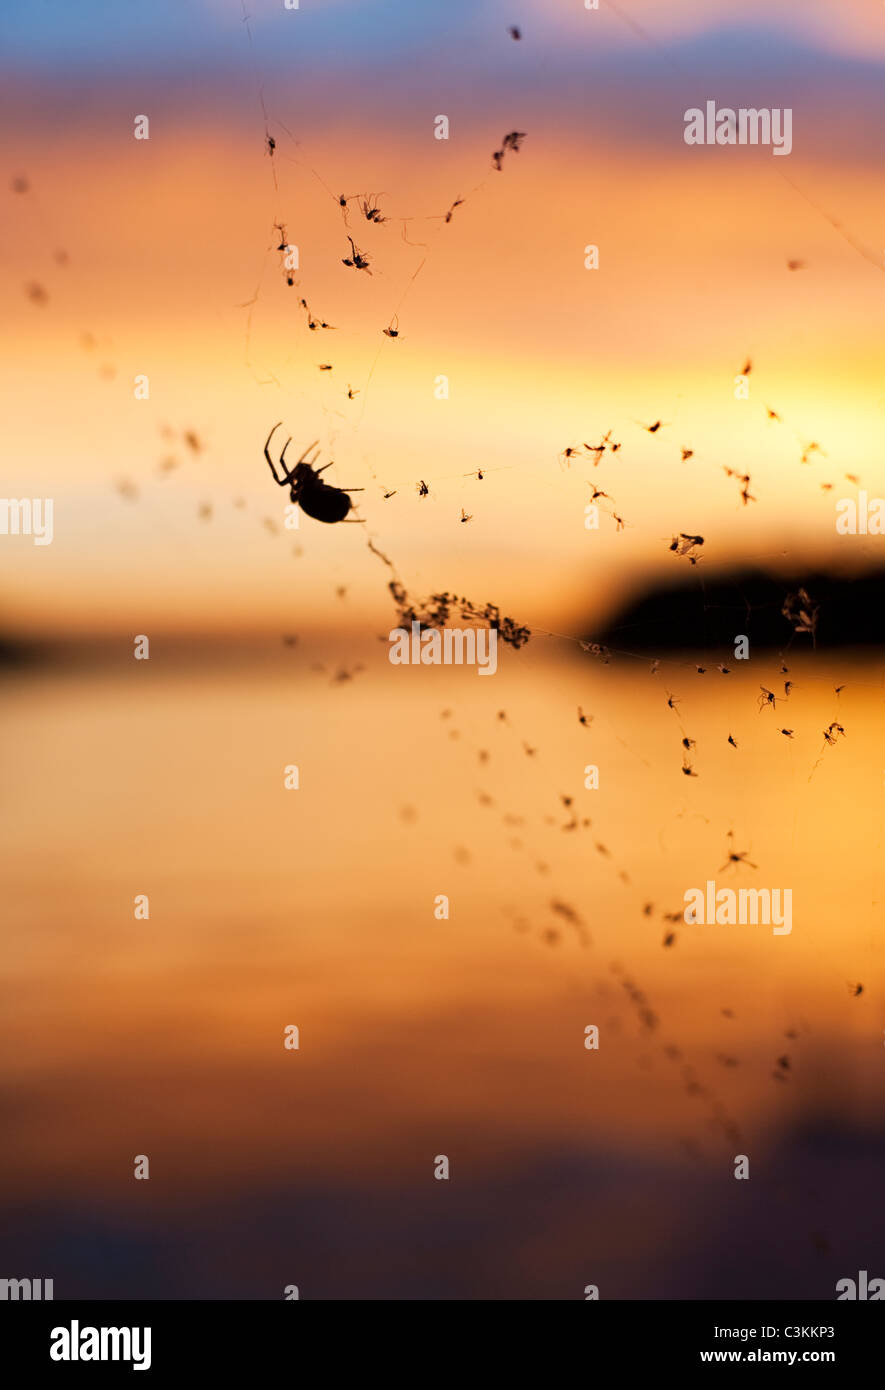 Silueta de araña en la web contra el atardecer Foto de stock